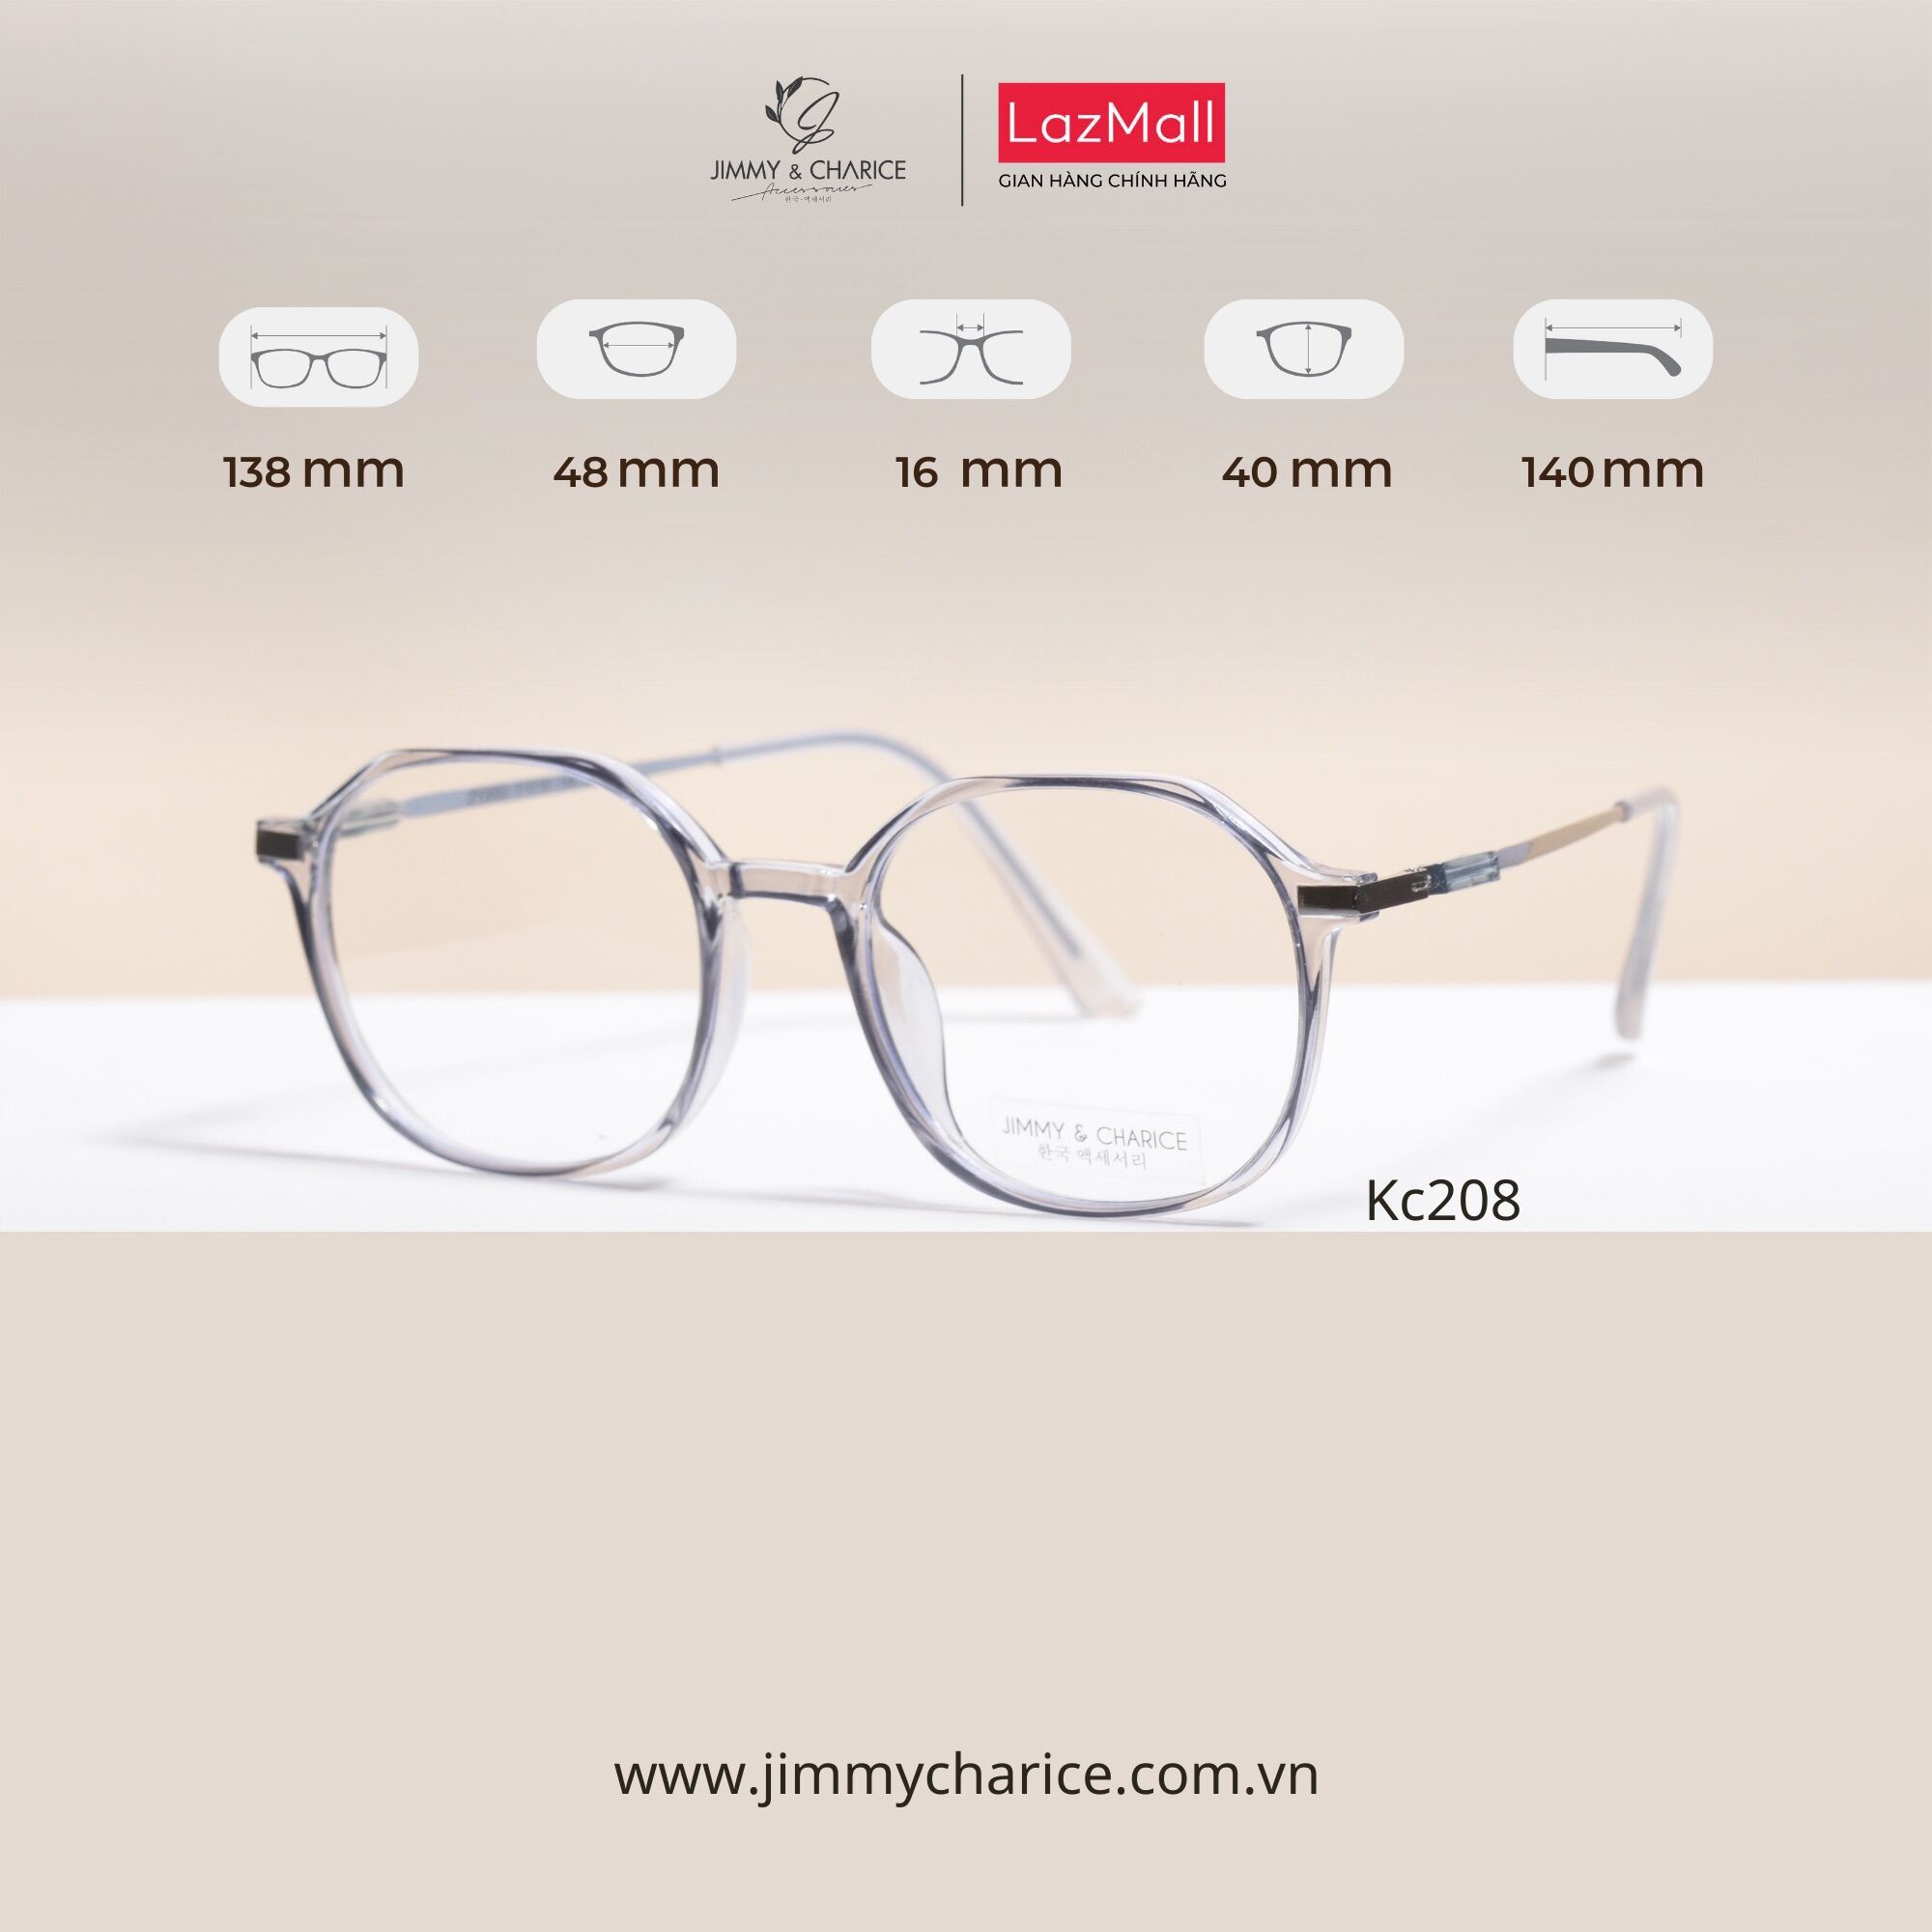 Giá bán Gọng kính nữ Jimmy & Charice mắt kính chống ánh sáng xanh thay mắt cận được